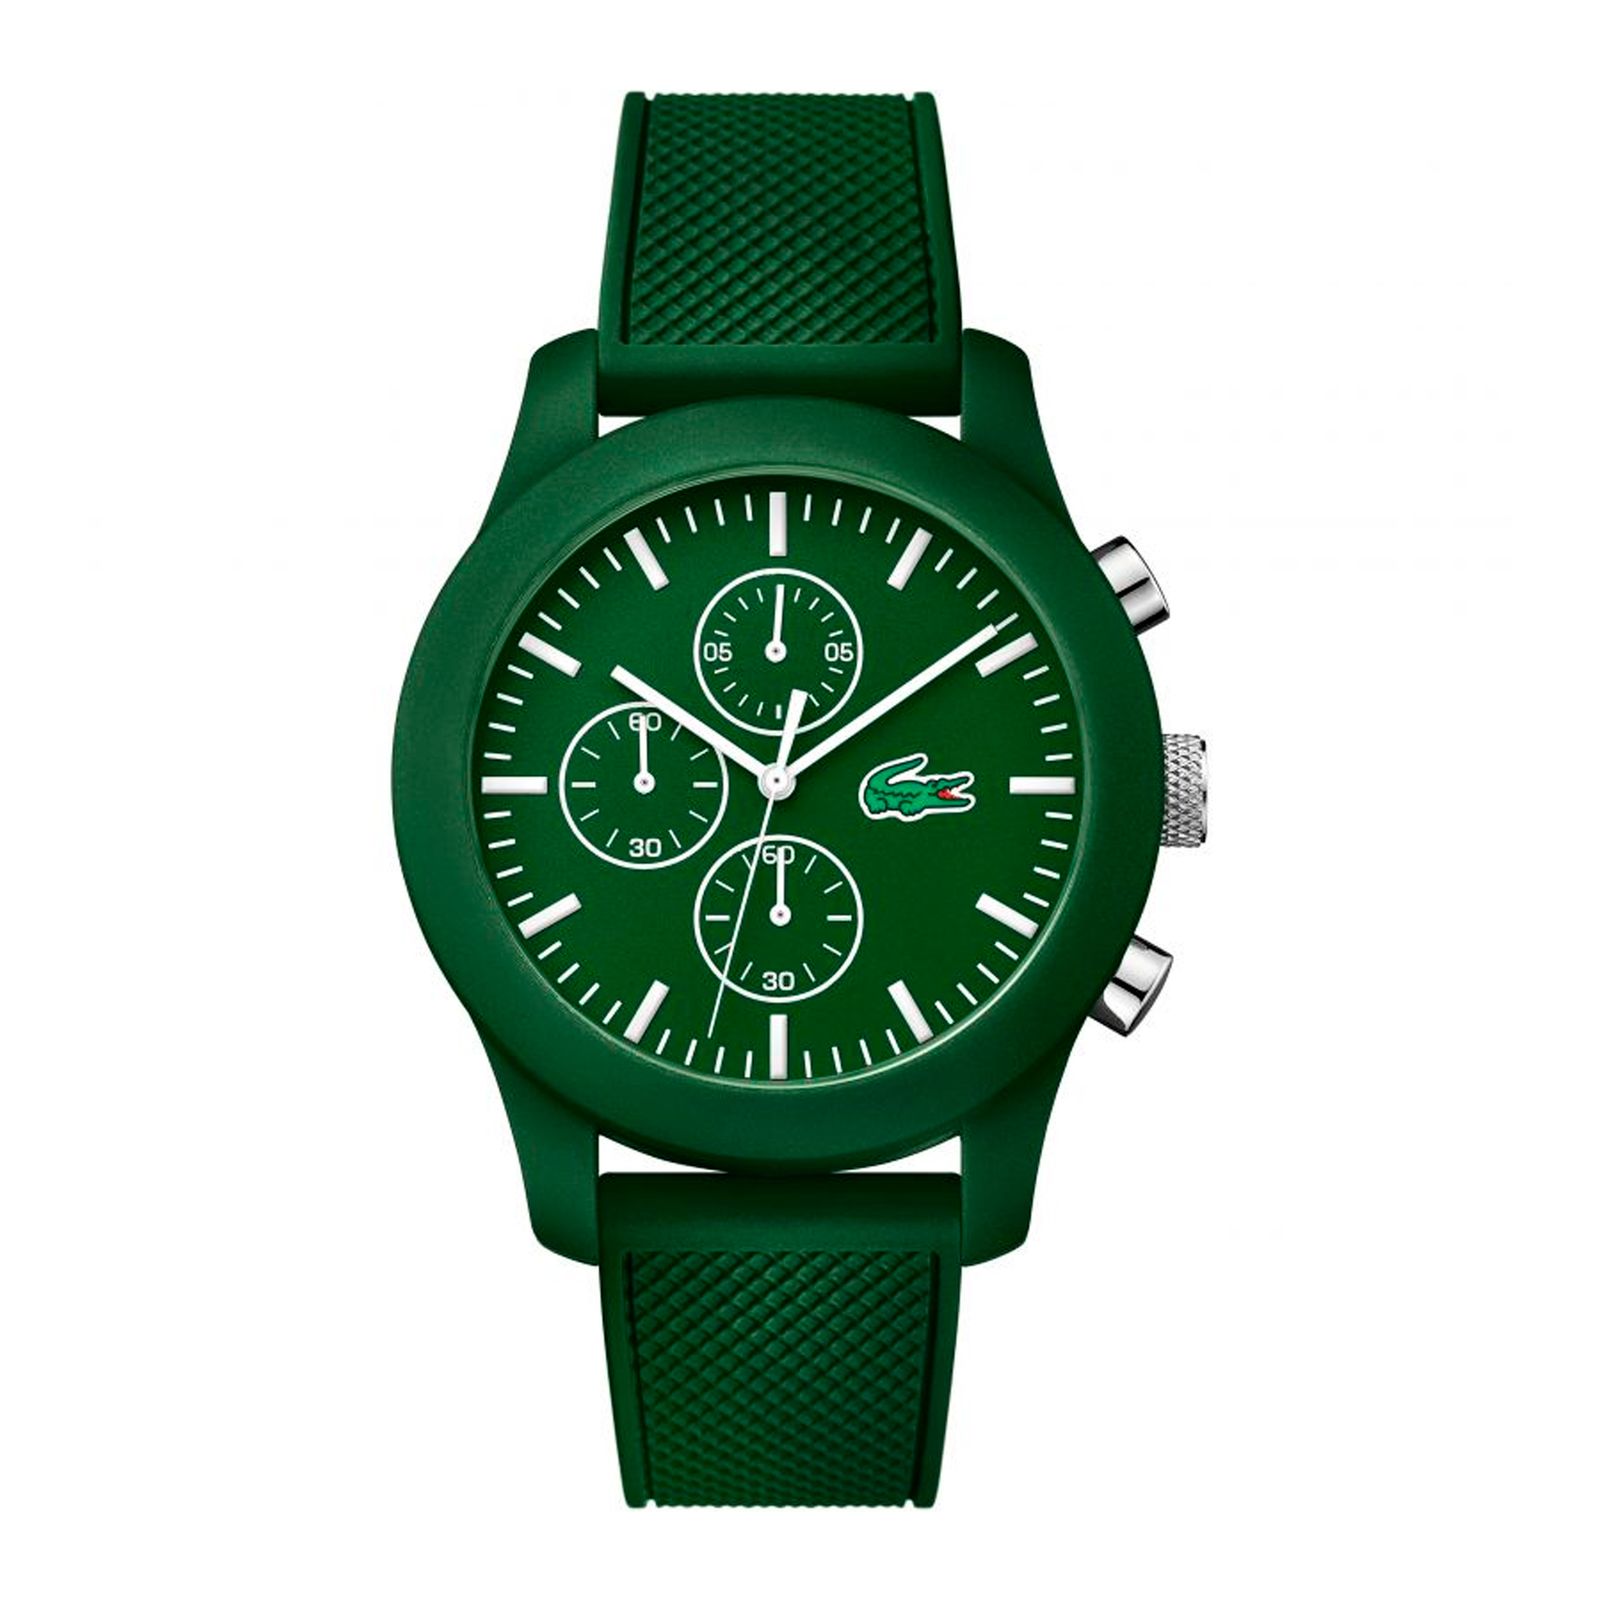 ساعت مچی عقربه ای مردانه لاگوست مدل 2010822 - سبز - 1